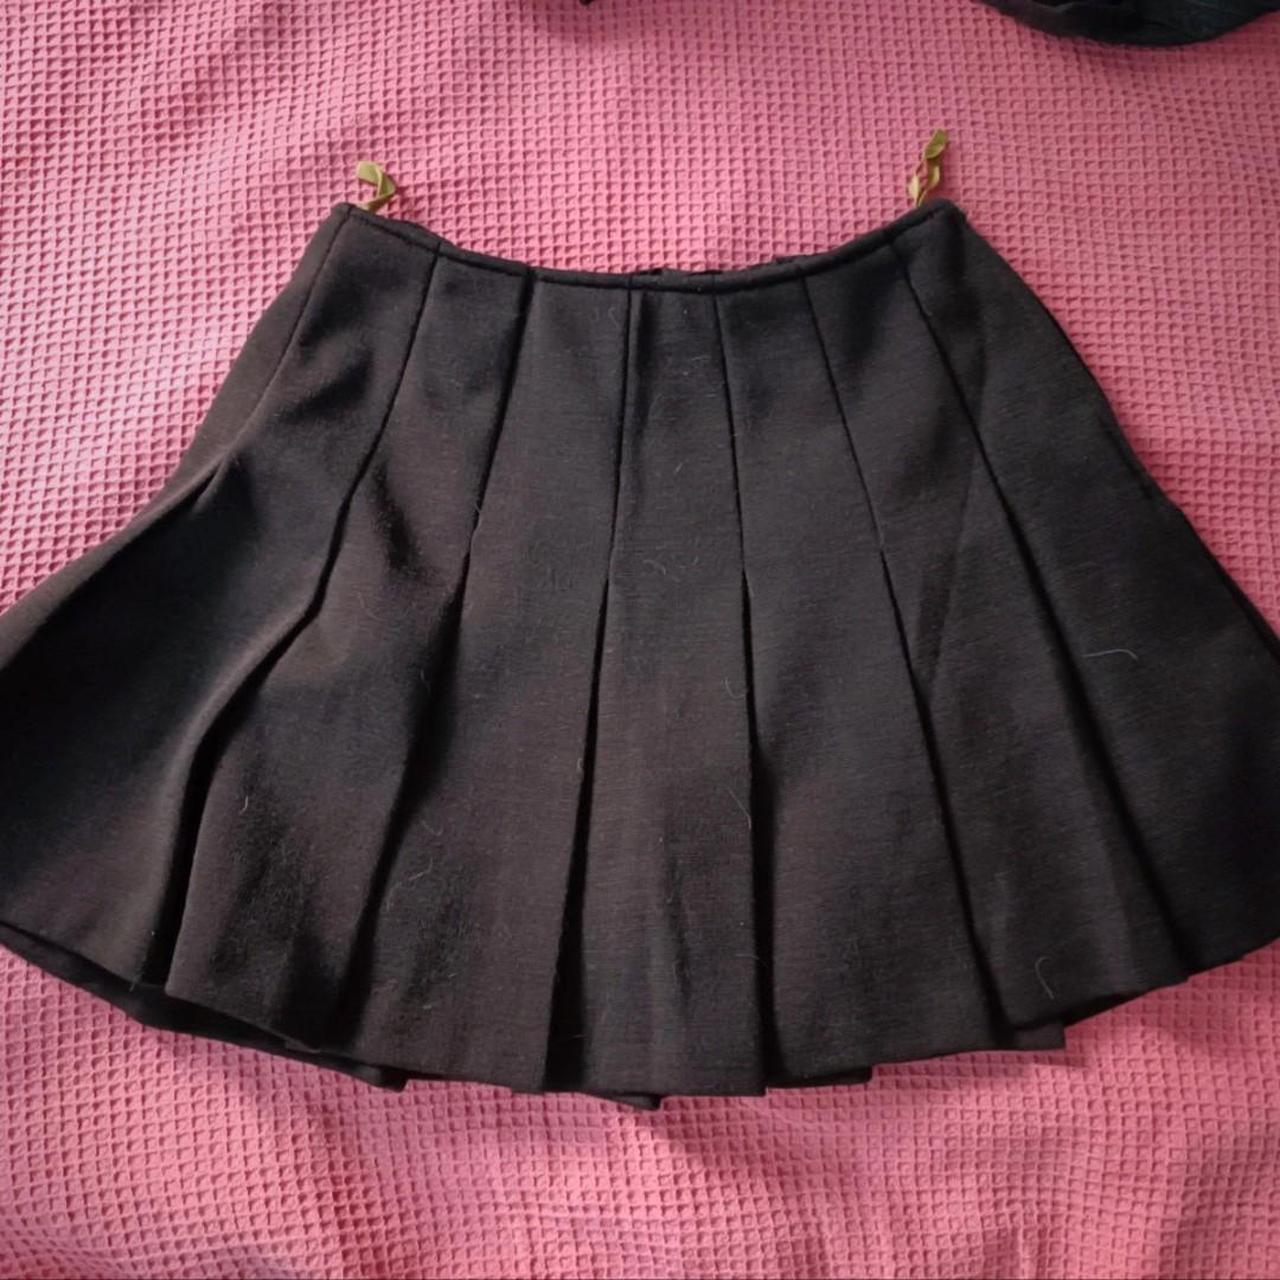 y2k style mini skirt - Depop